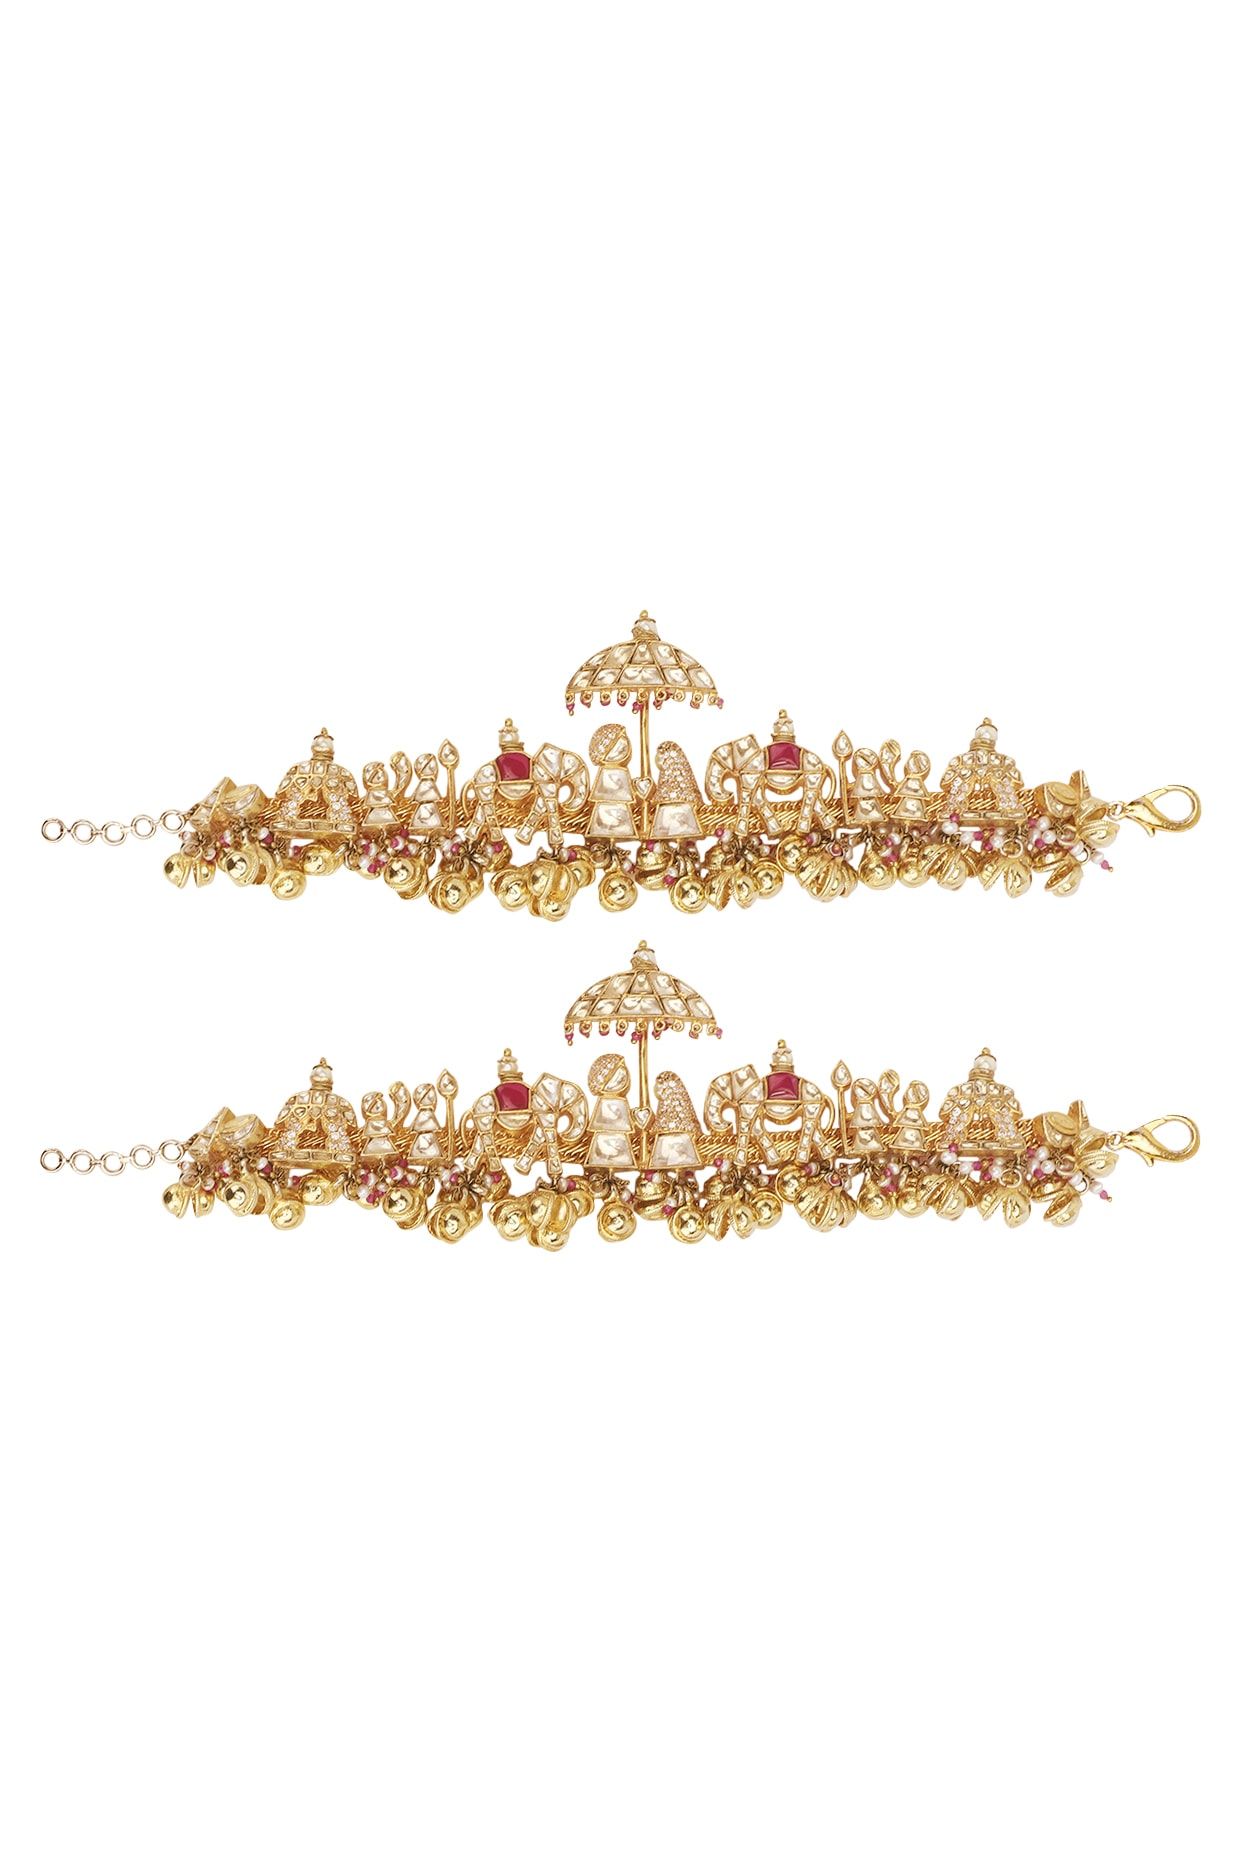 gold bridal anklets